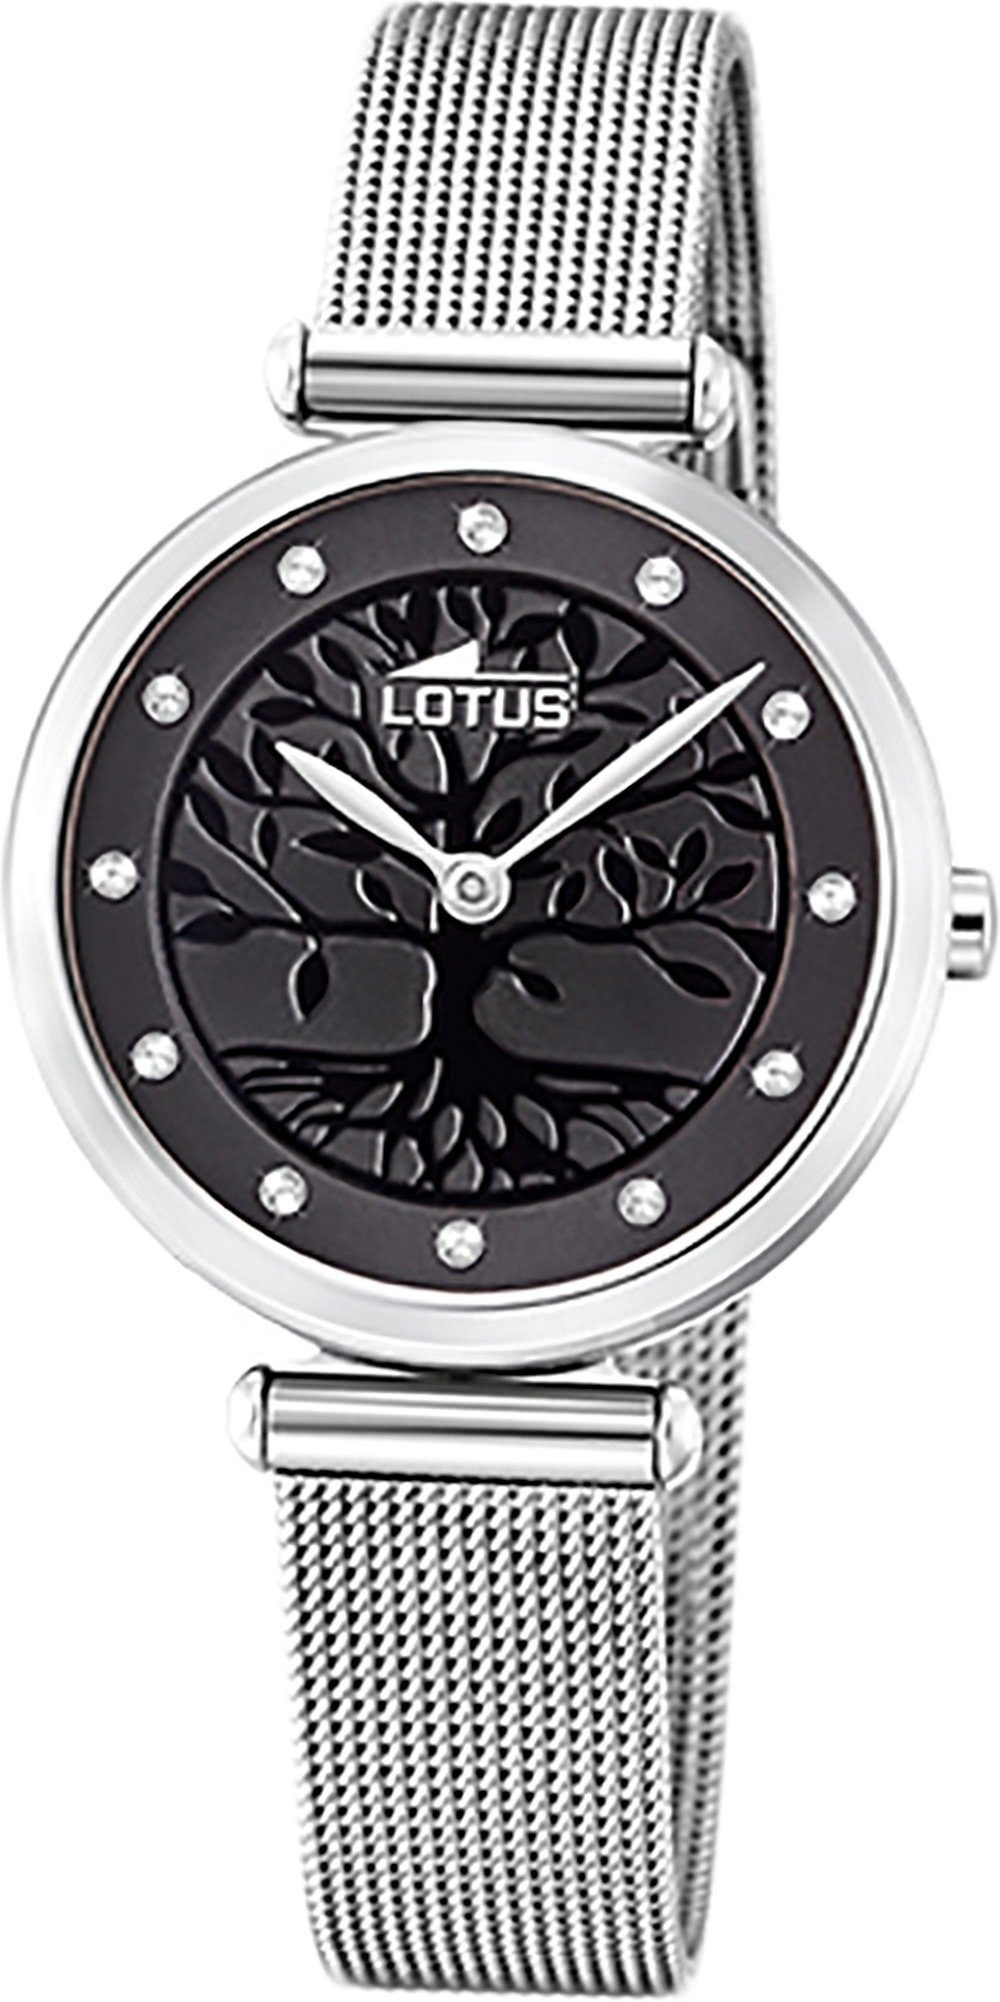 Lotus Quarzuhr LOTUS Edelstahl Damen Uhr 18708/3, Damenuhr mit Edelstahlarmband, rundes Gehäuse, klein (ca. 29mm), Fashi